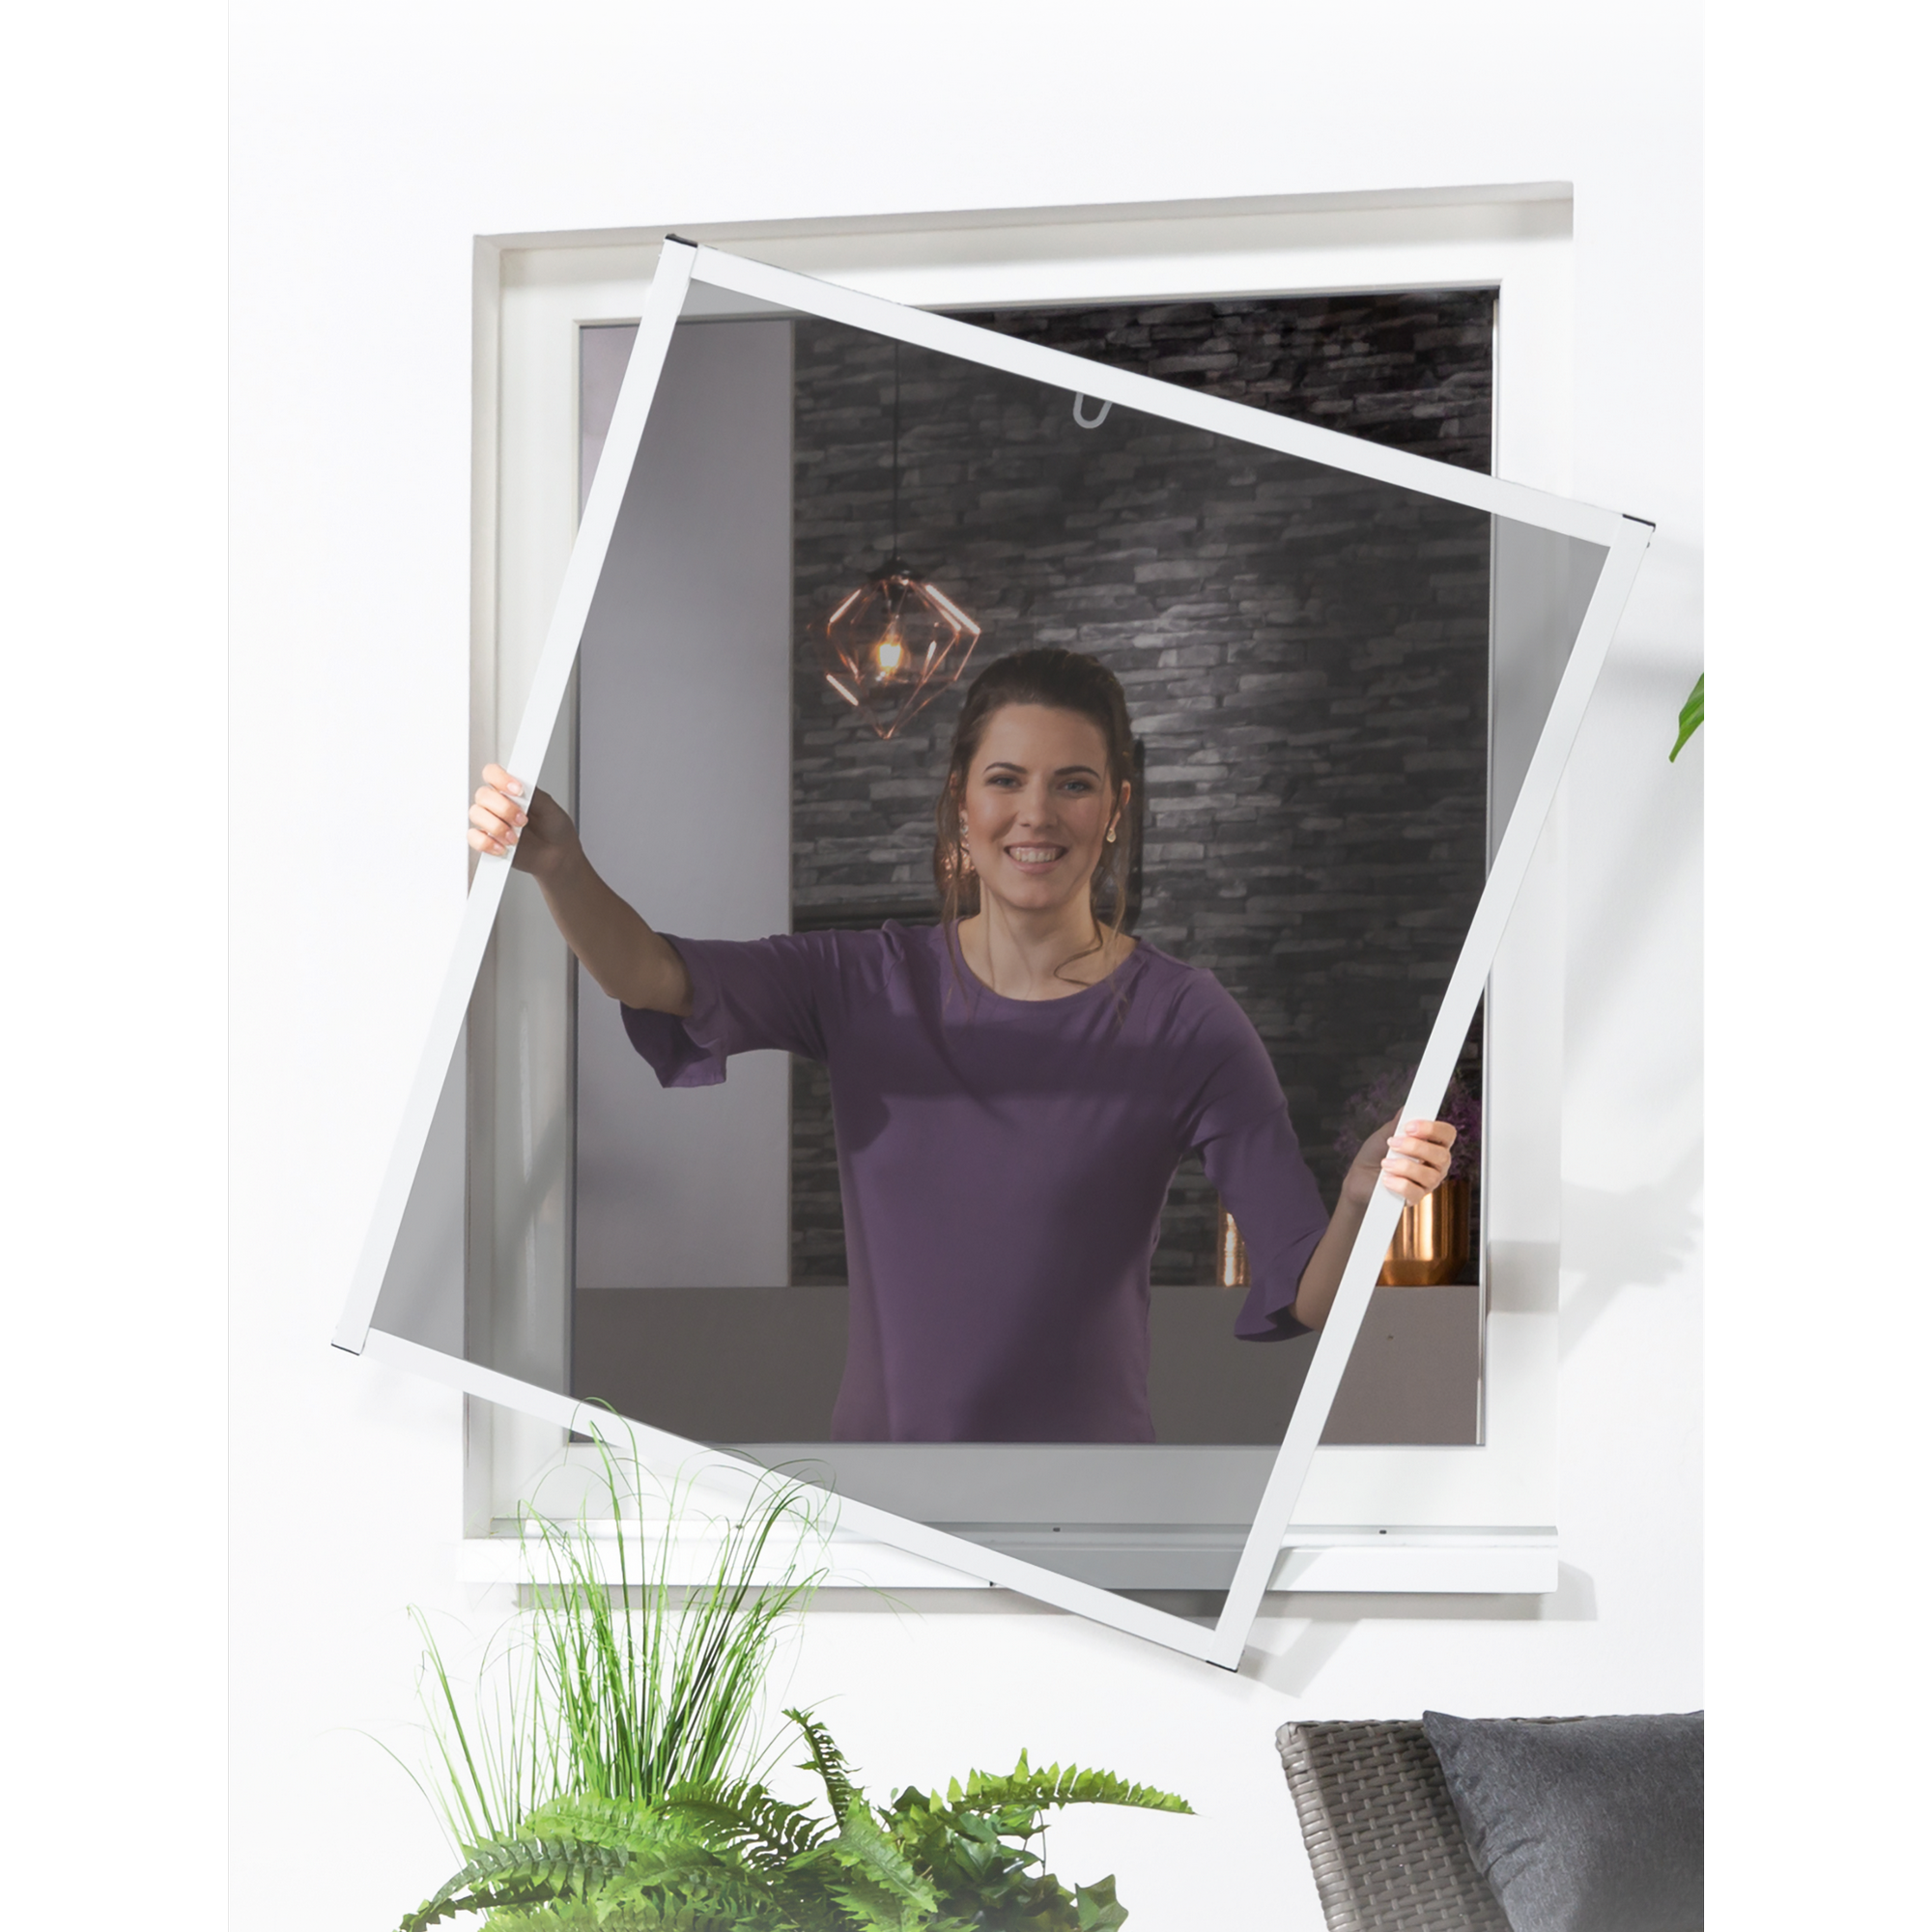 Pollenschutz-Bausatz für Fenster 'Master Slim' 130 x 150 cm weiß + product picture